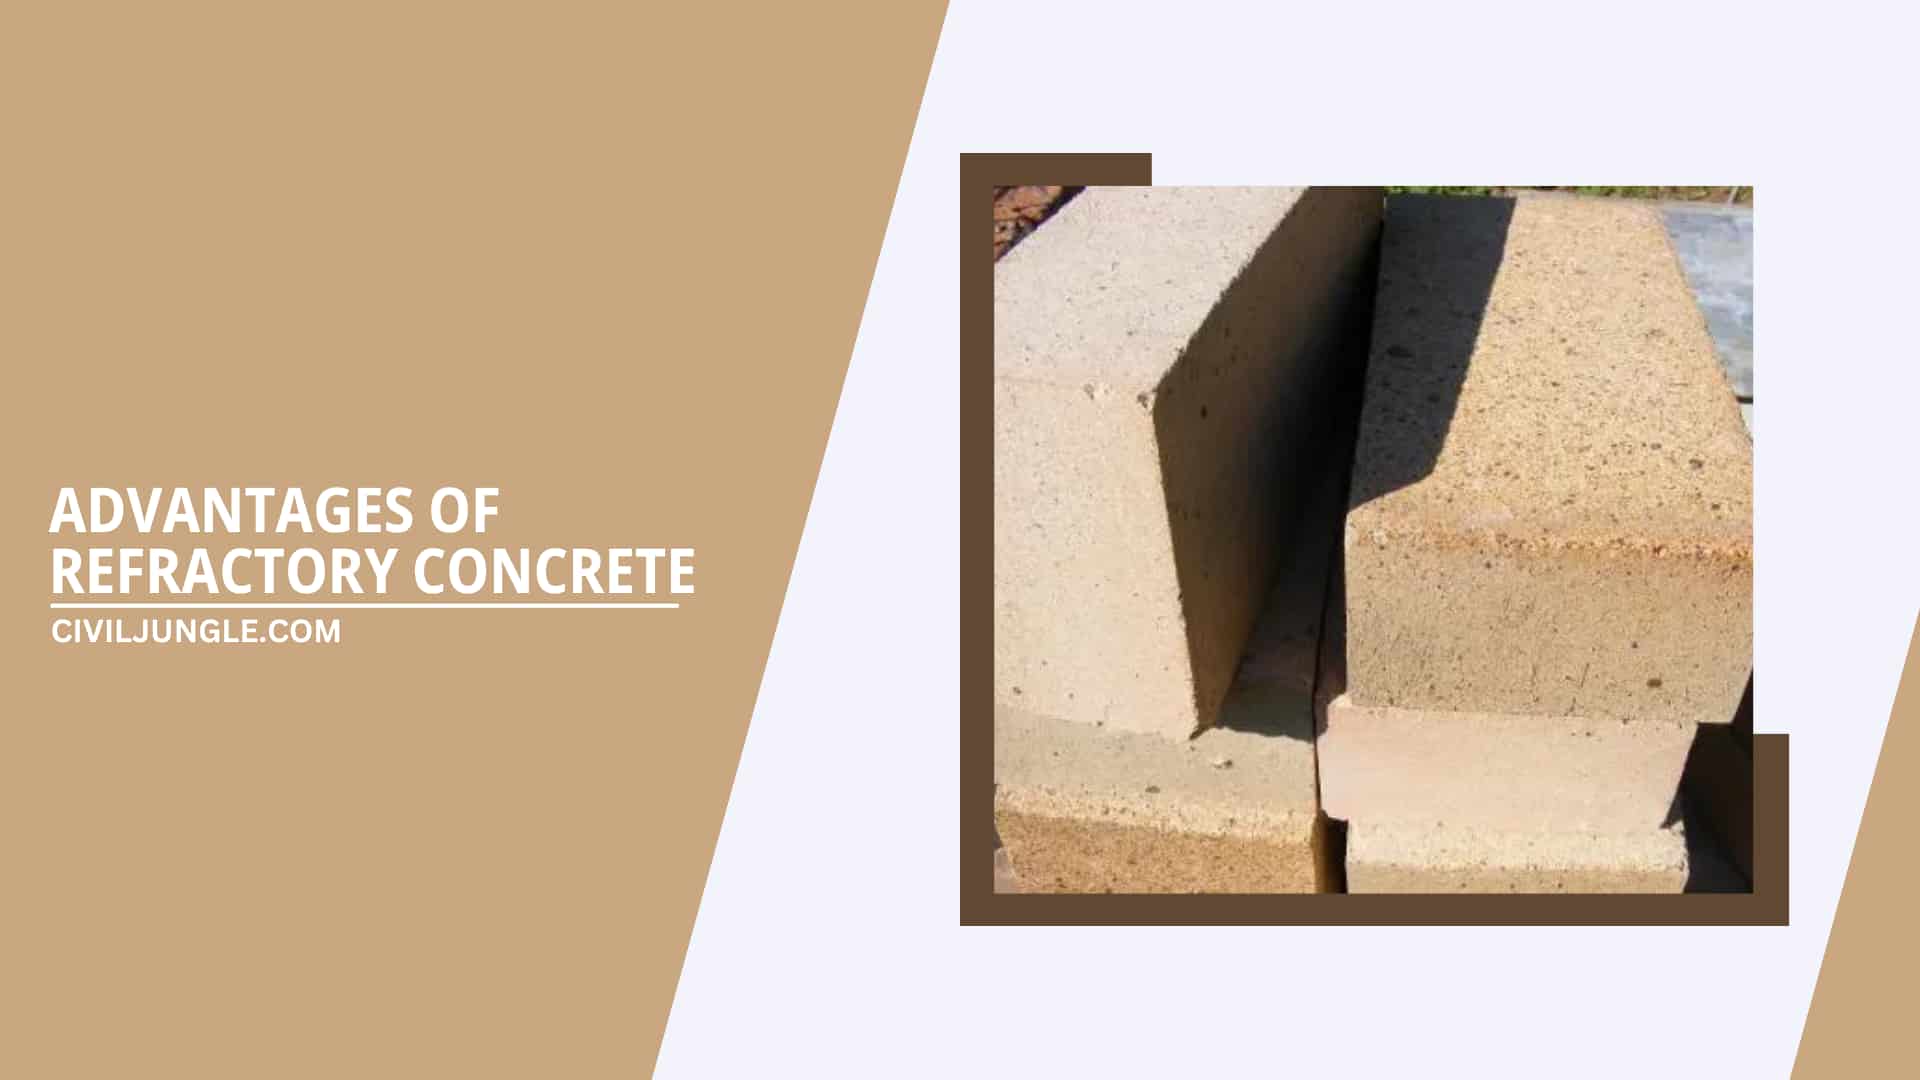 Advantages of Refractory Concrete